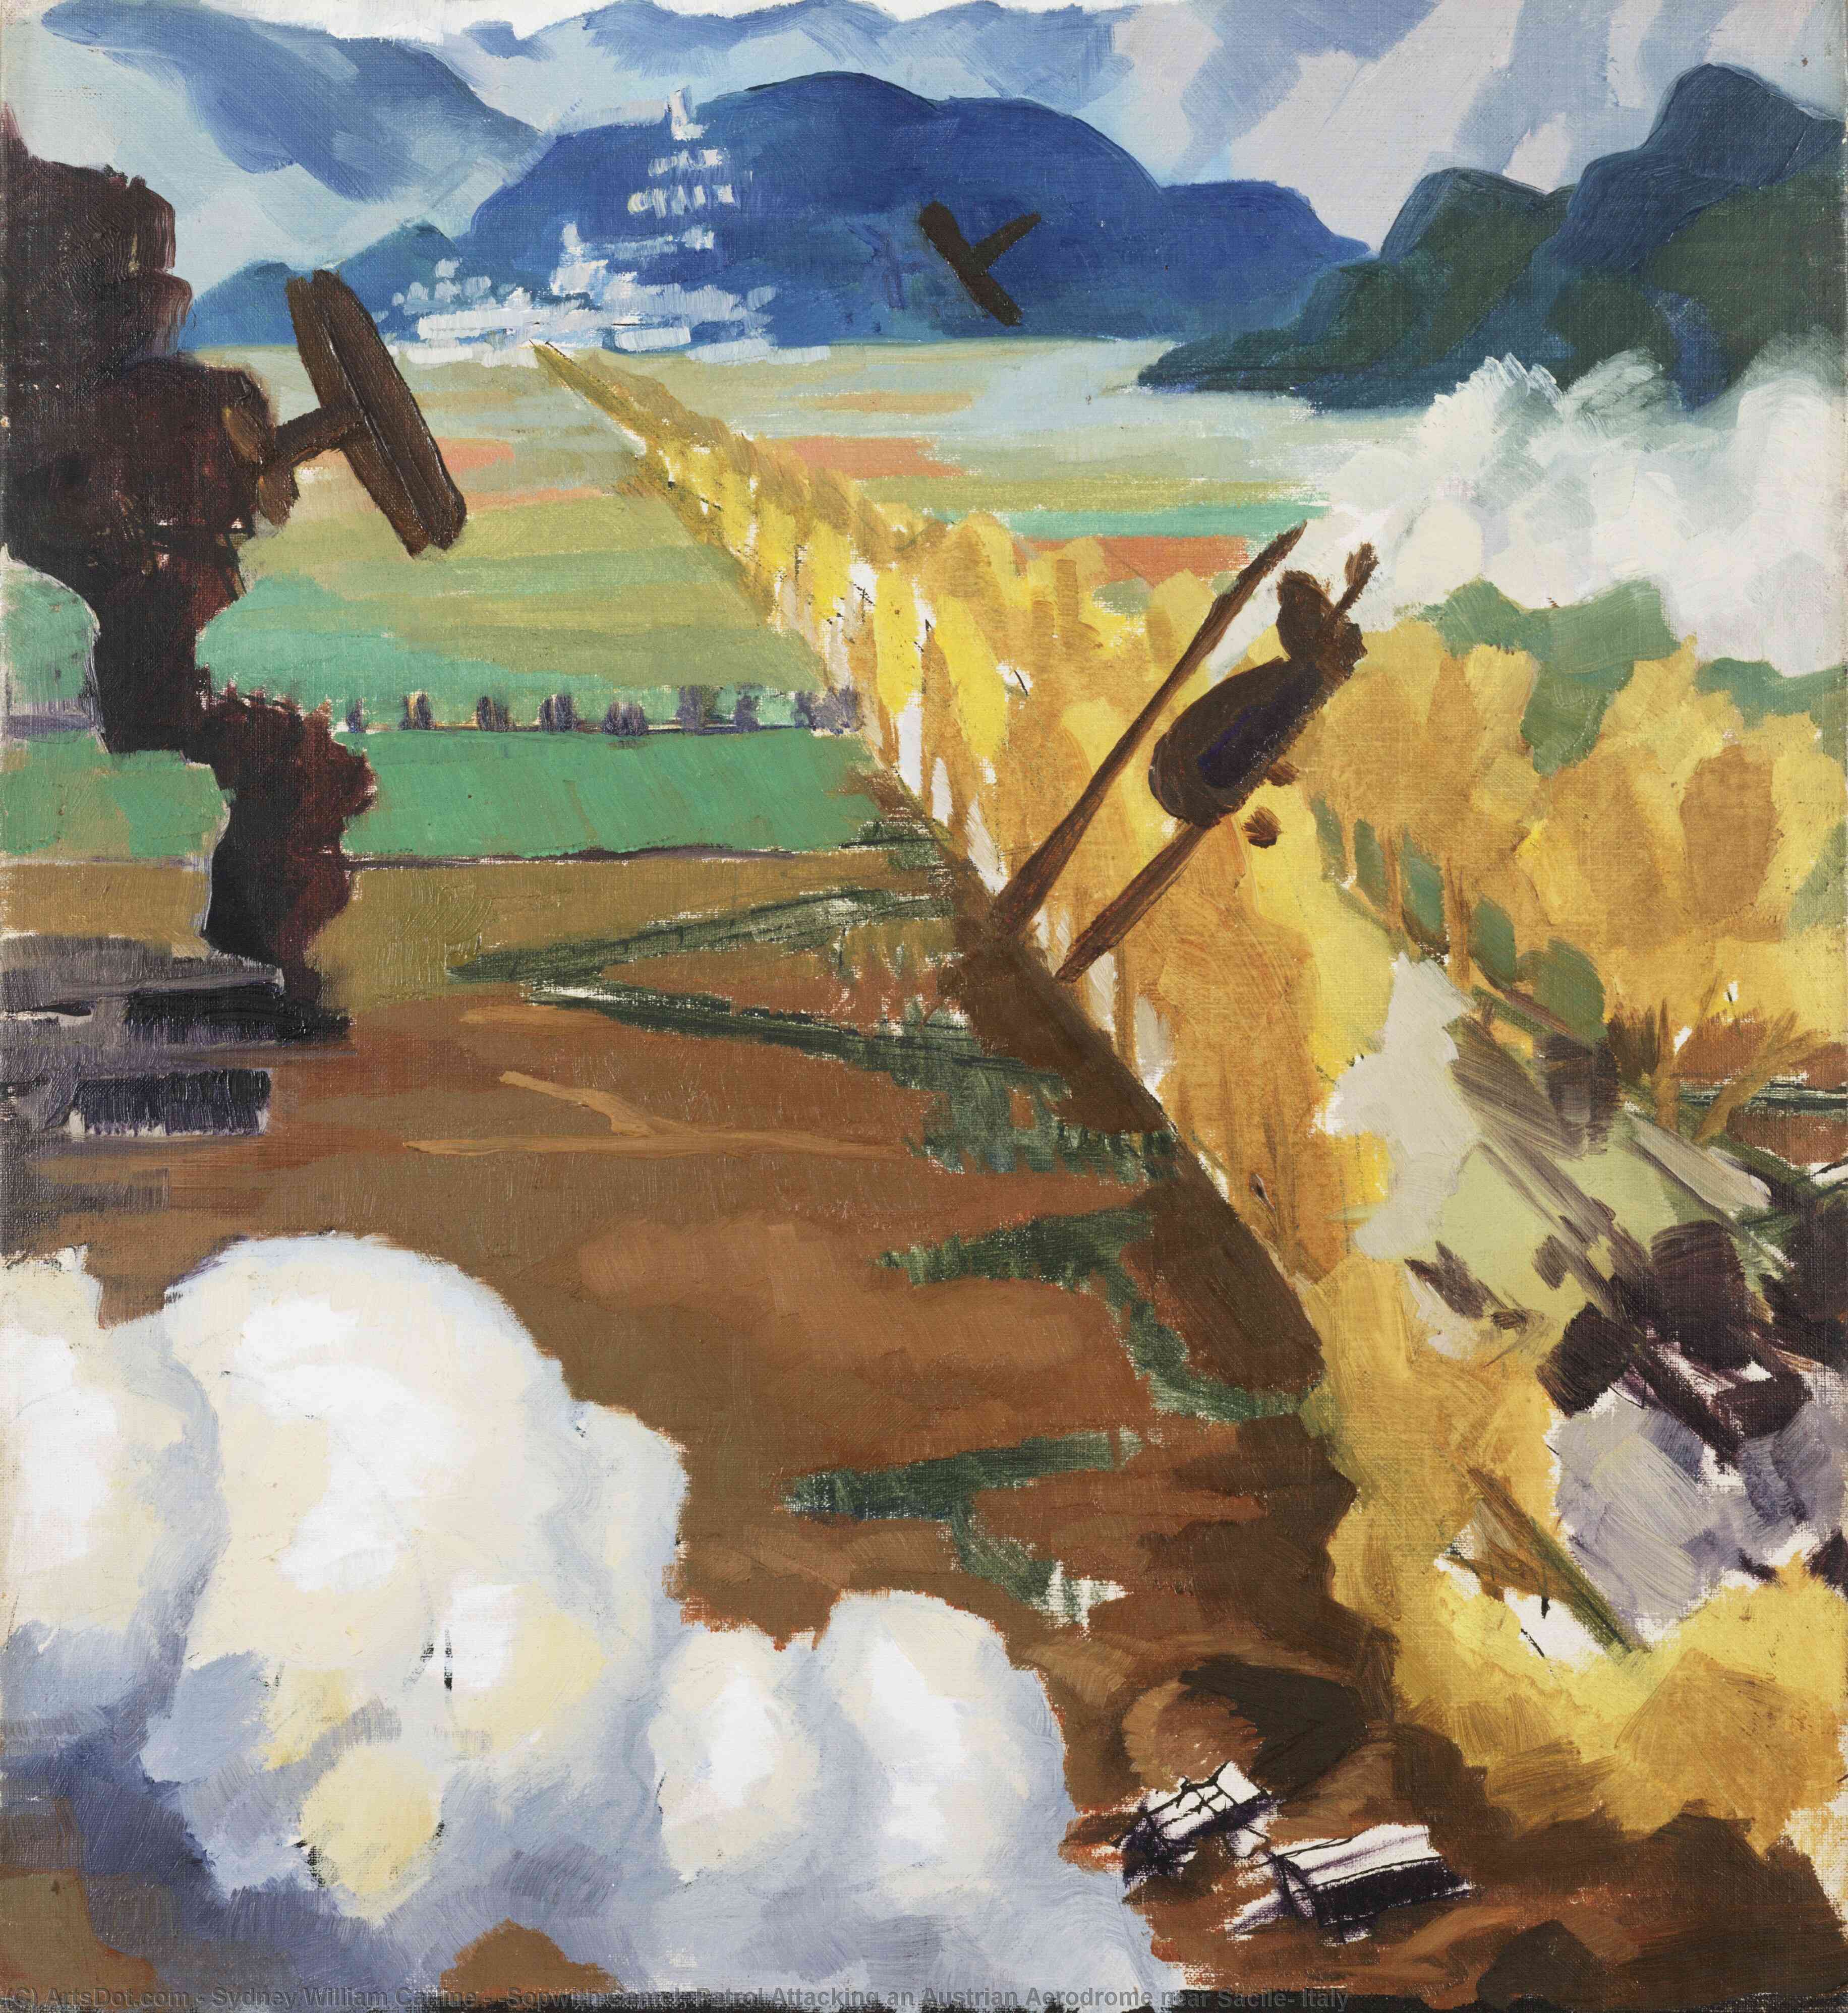 Achat Reproductions D'art Patrouille `Sopwith Camel` Attaquant un aérodrome autrichien près de Sacile, Italie, 1918 de Sydney William Carline (1888-1929) | ArtsDot.com